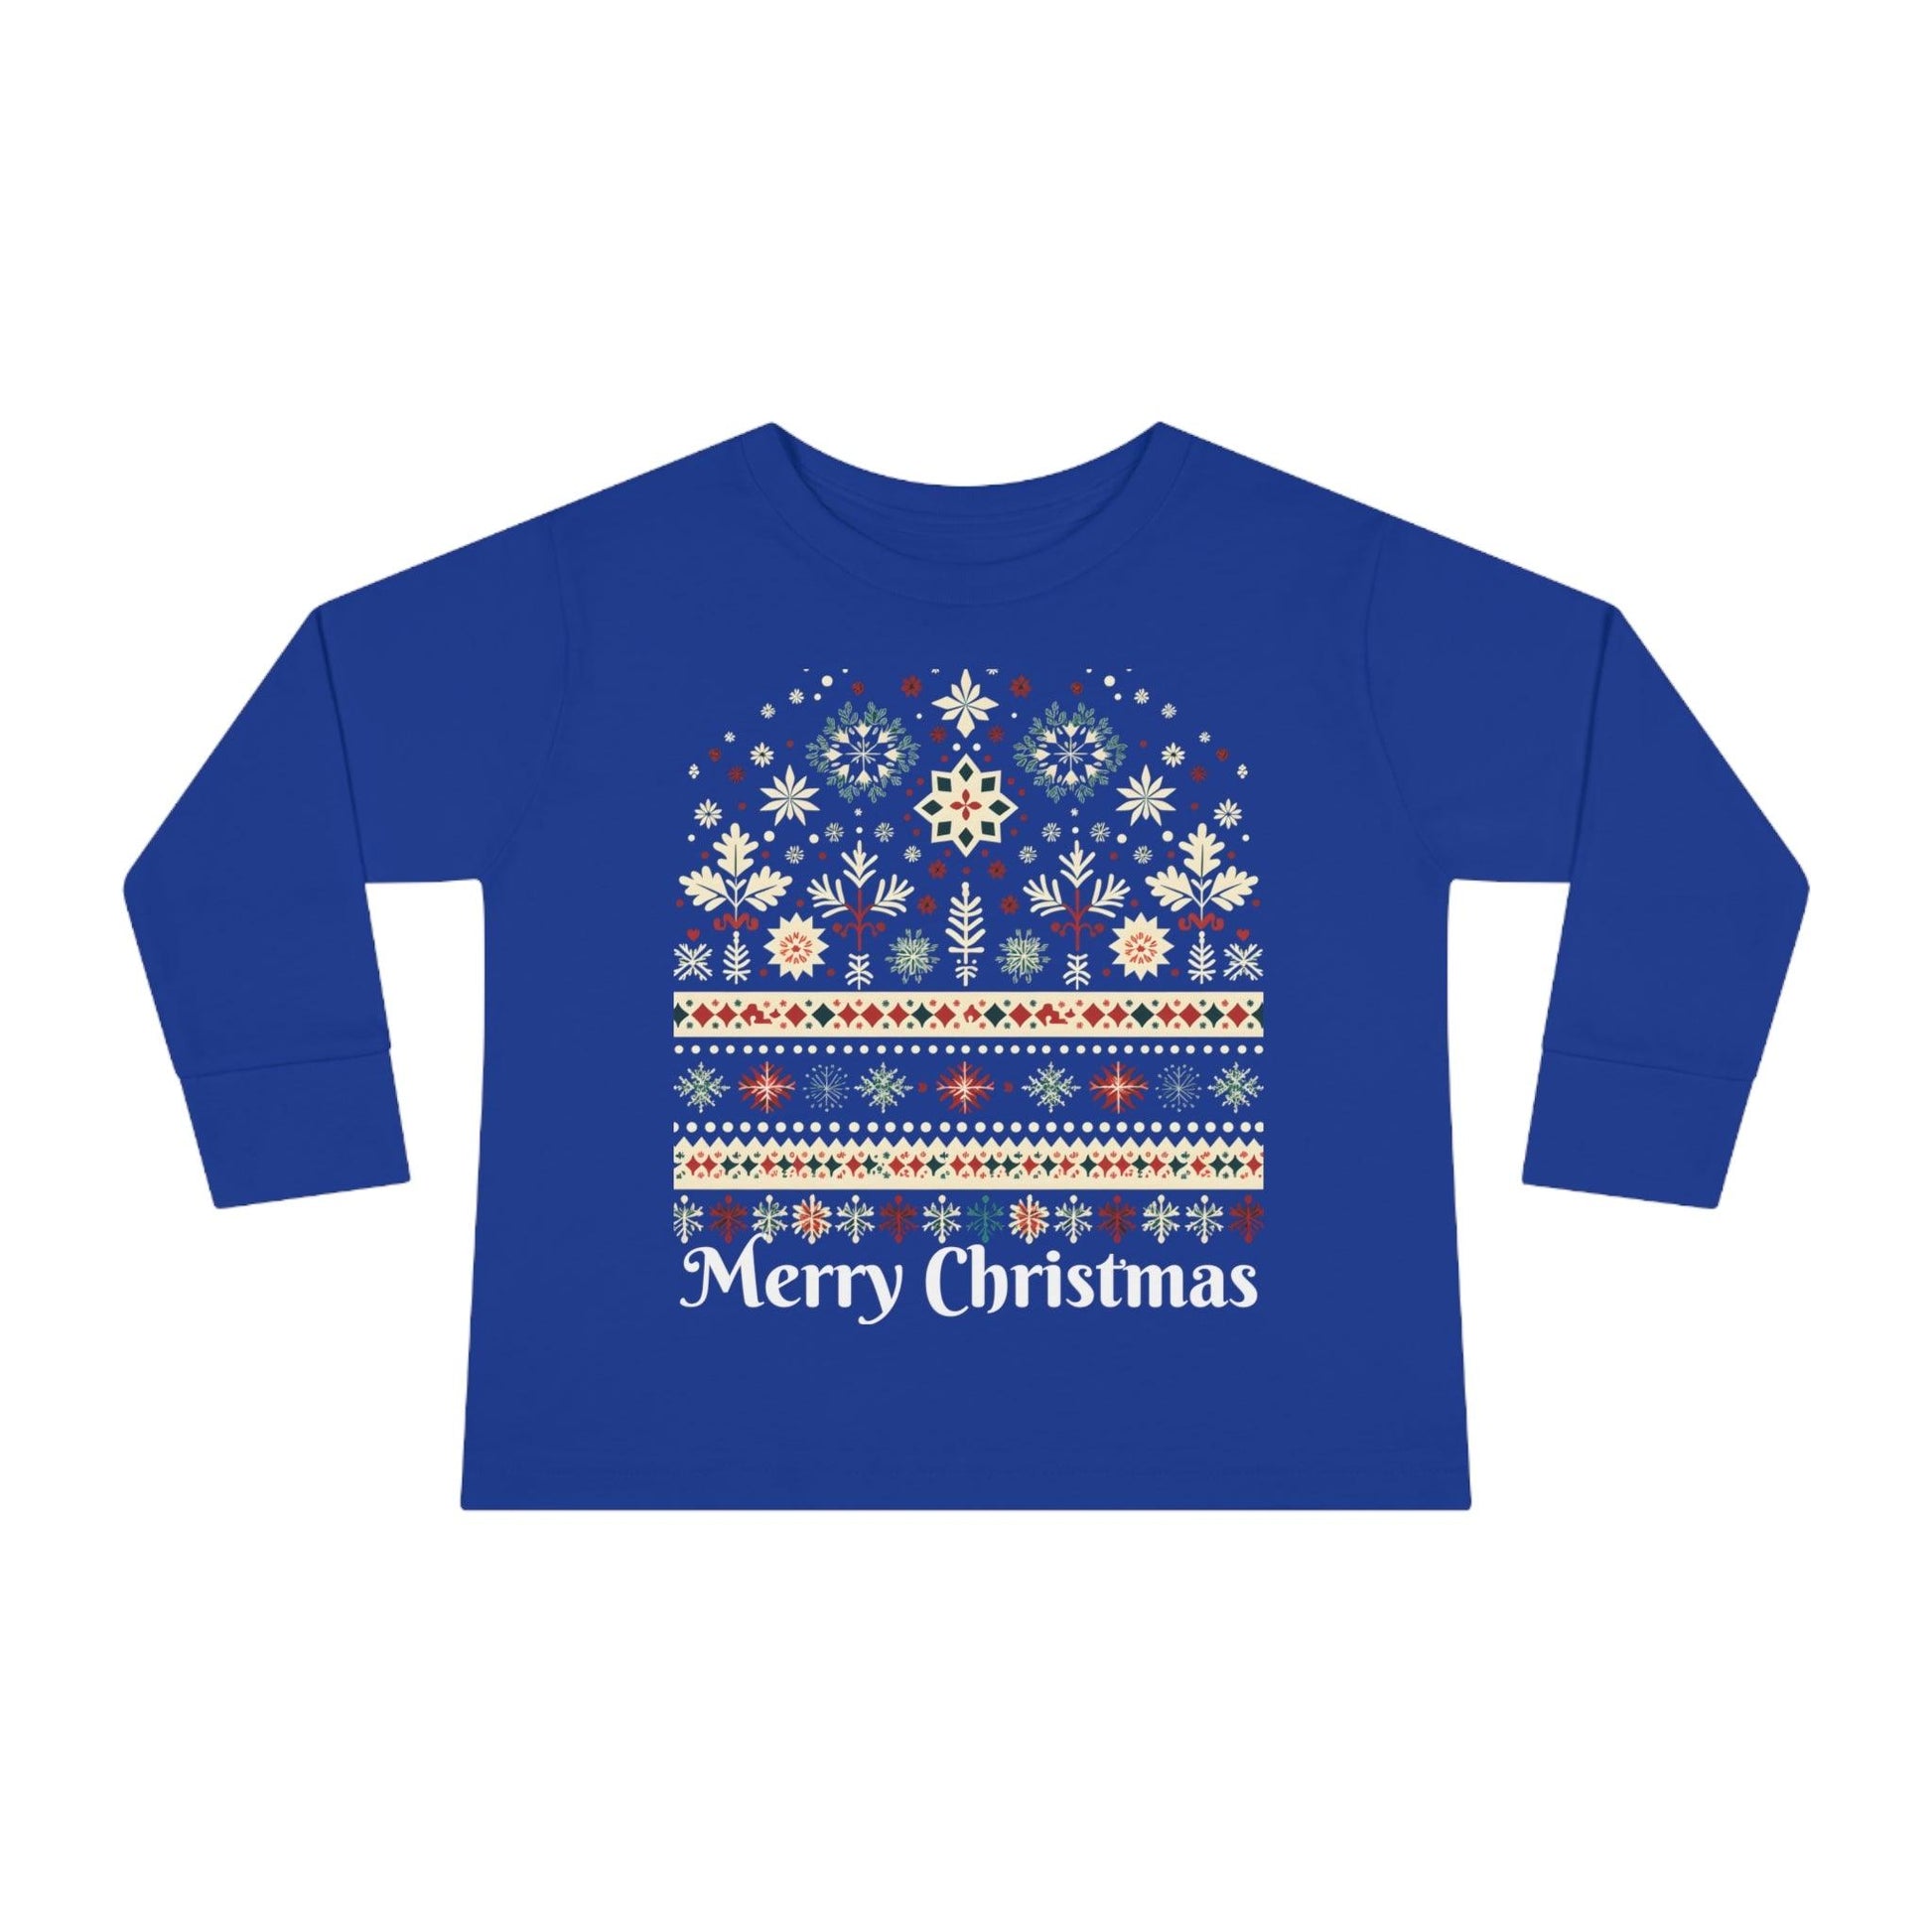 Kids Christmas Shirt Long Sleeve for Kids Christmas Outfit for Kids Christmas Design - Giftsmojo